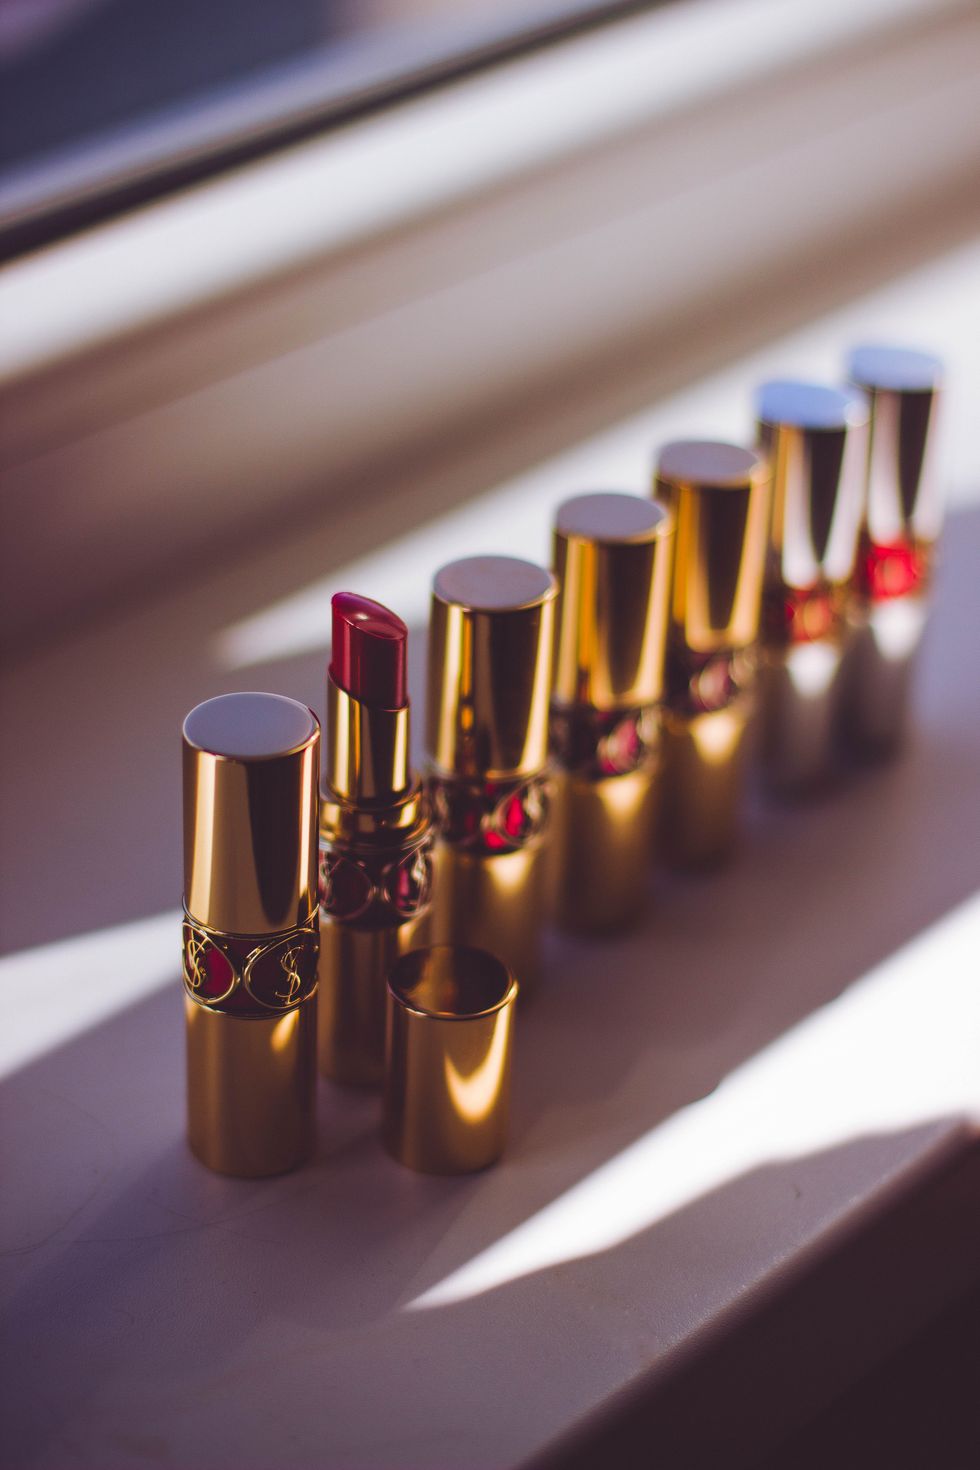 Lipsticks: